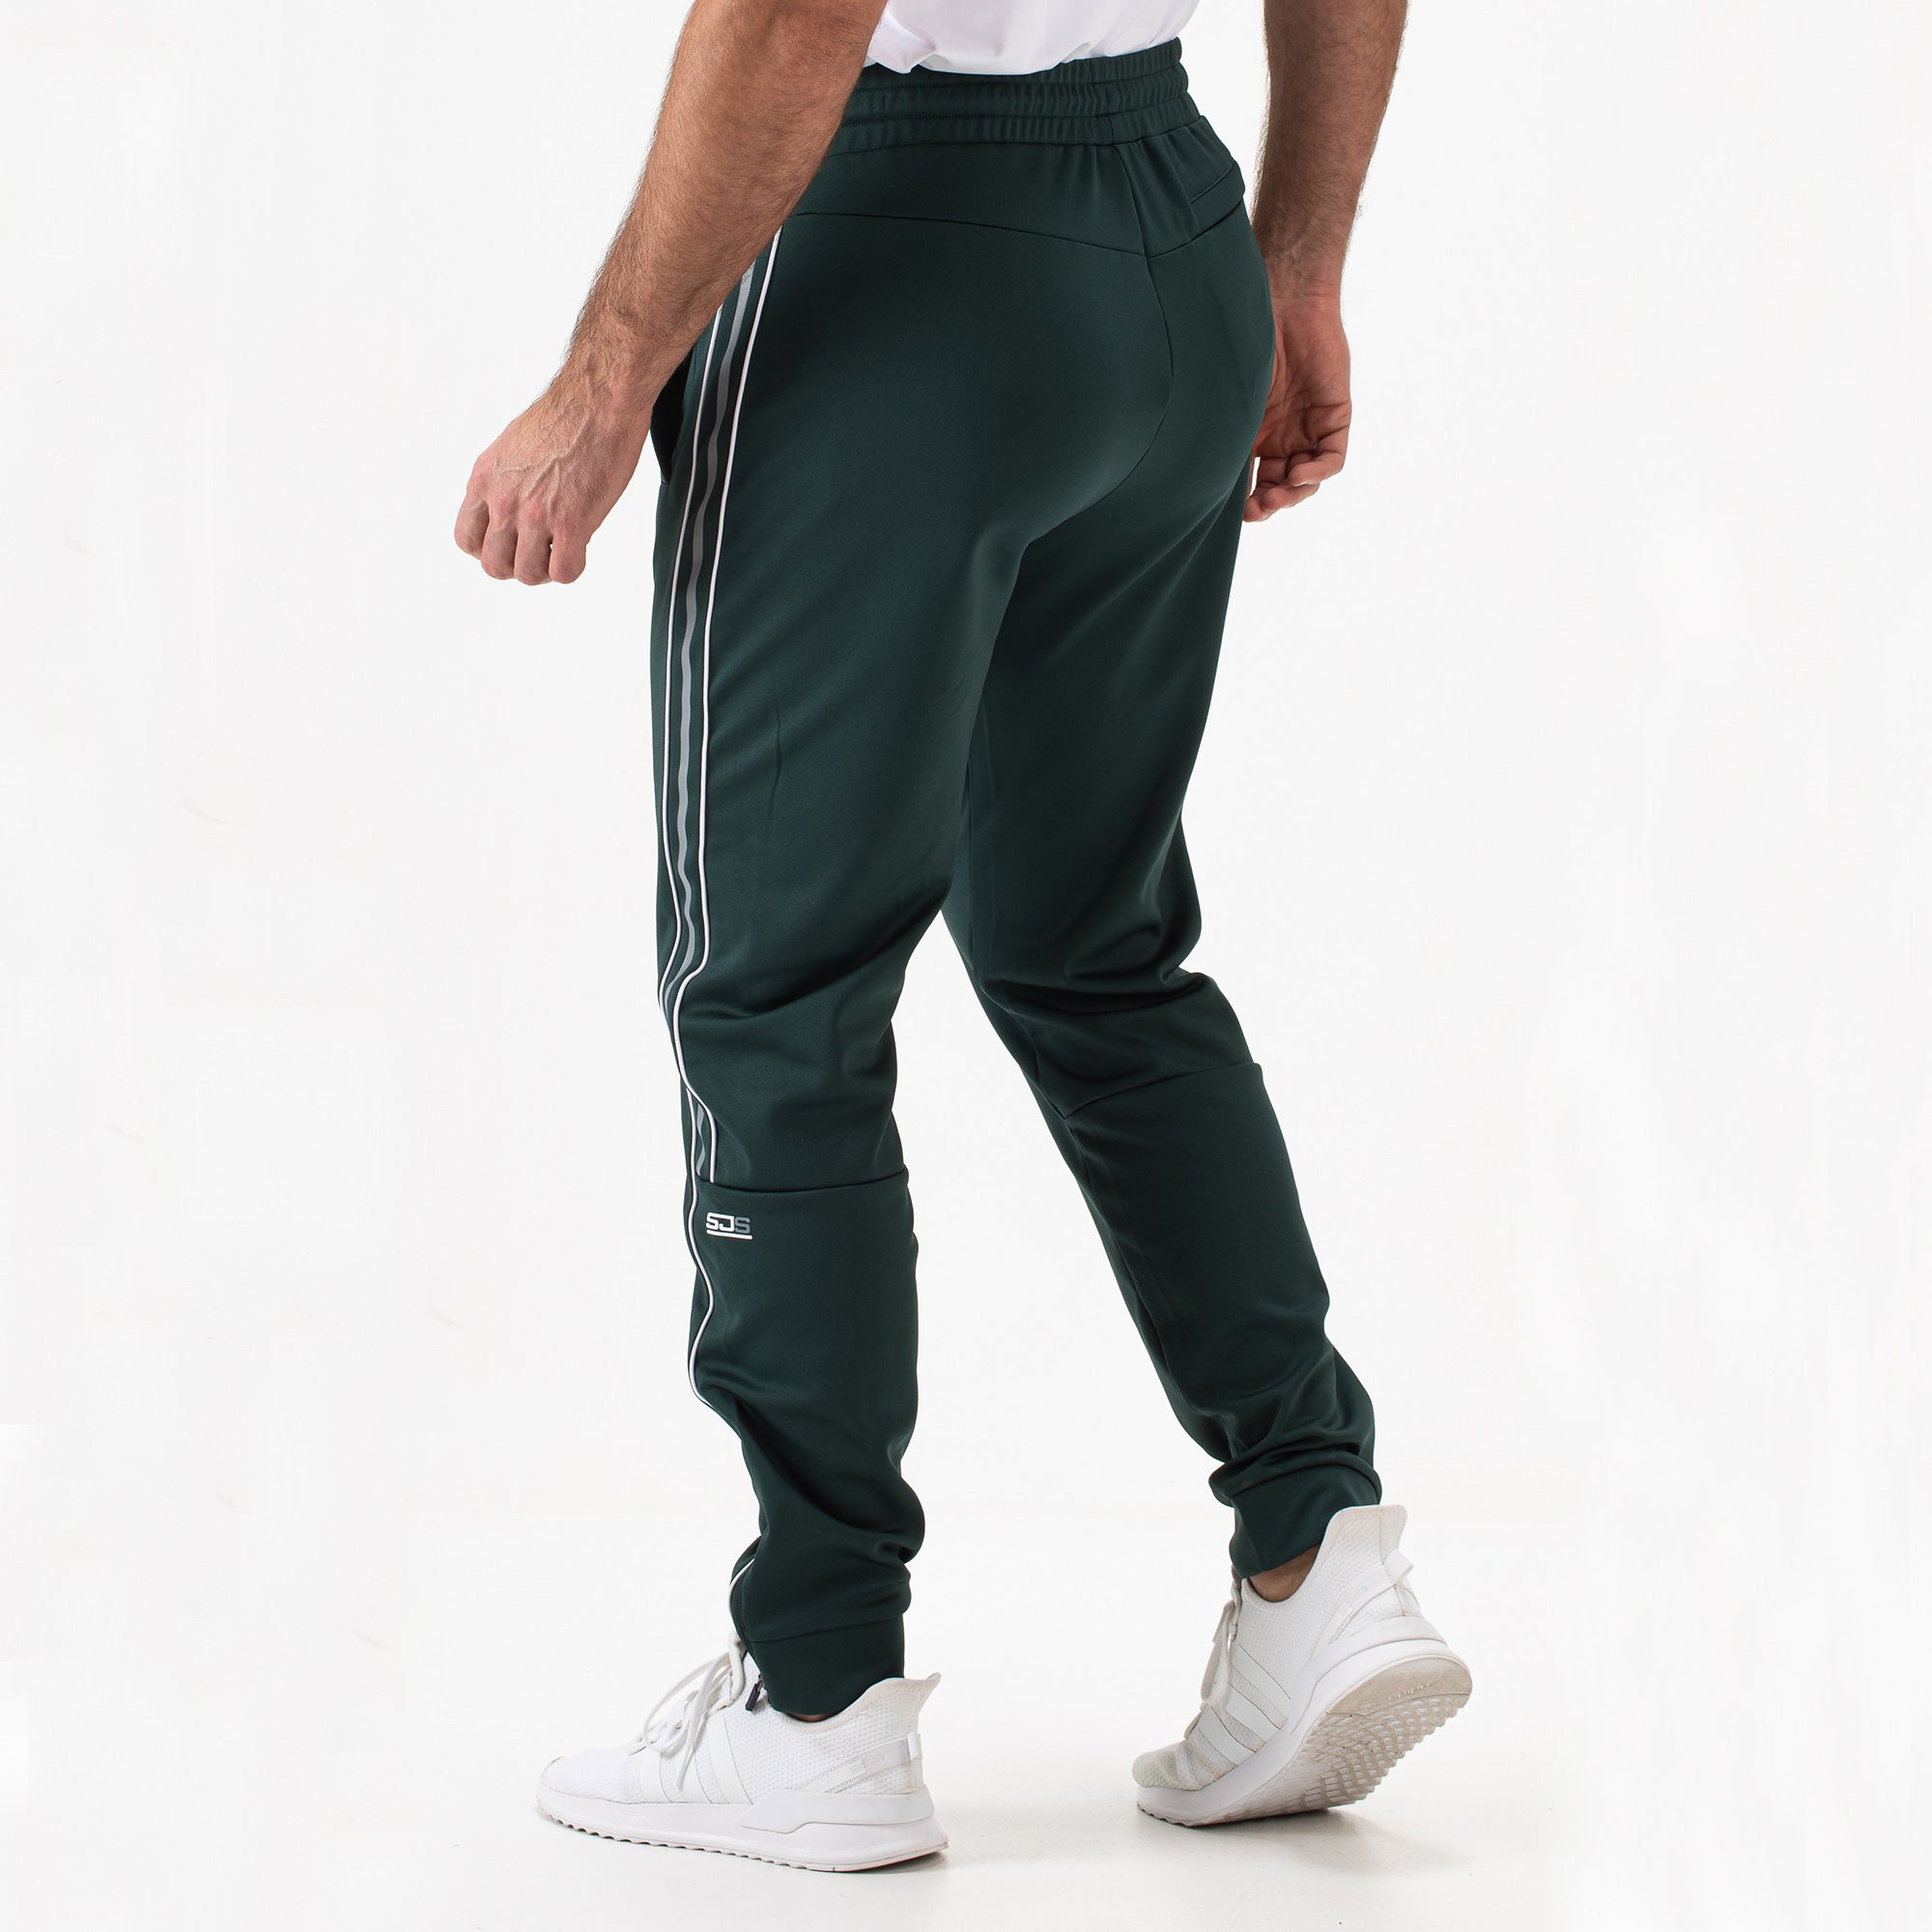 Sjeng Sports Dorsey Men's Tennis Pants - Green (2)